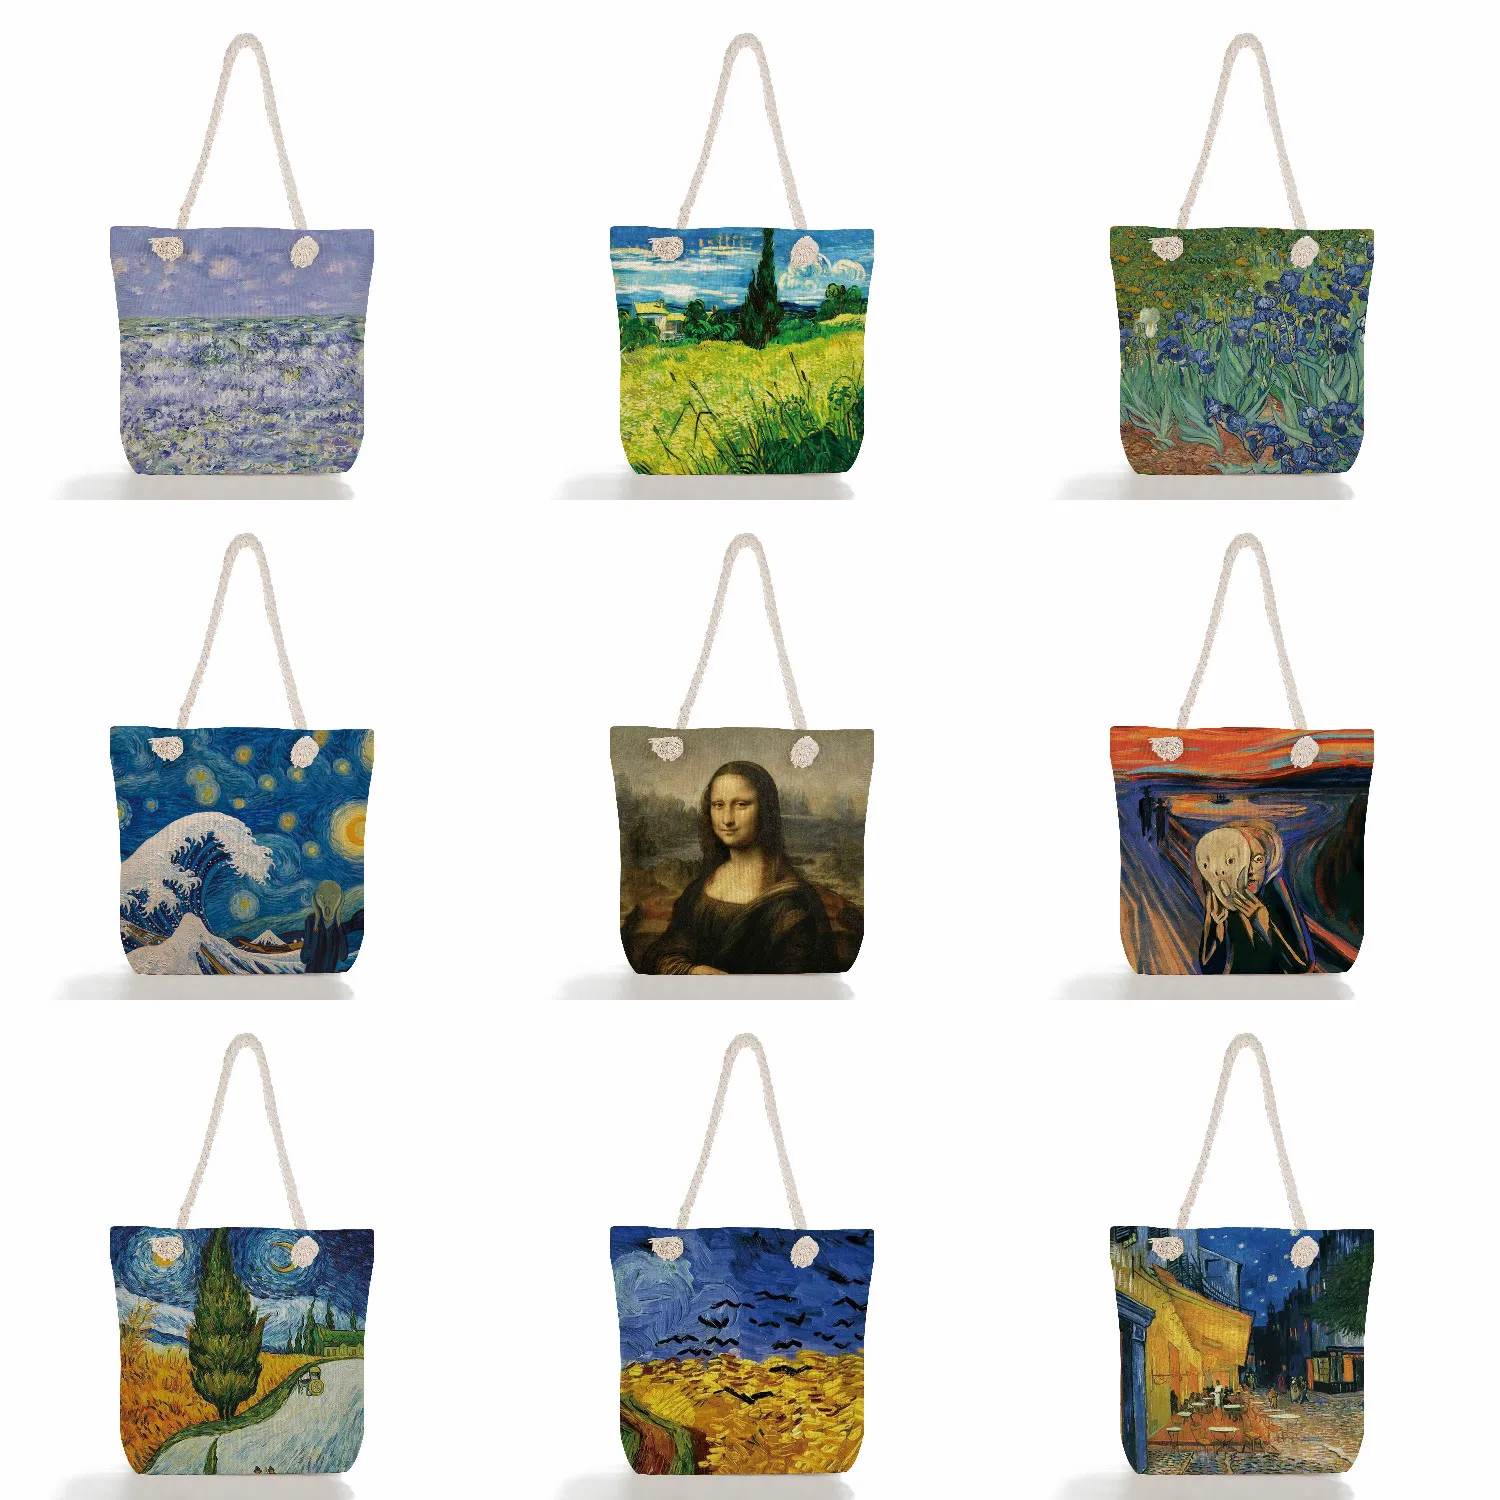 

Повседневная Женская Экологически чистая многоразовая сумка-тоут, шоппер в стиле Харадзюку, Эко сумка для покупок Ван Гога, вместительная художественная женская наплечная сумочка